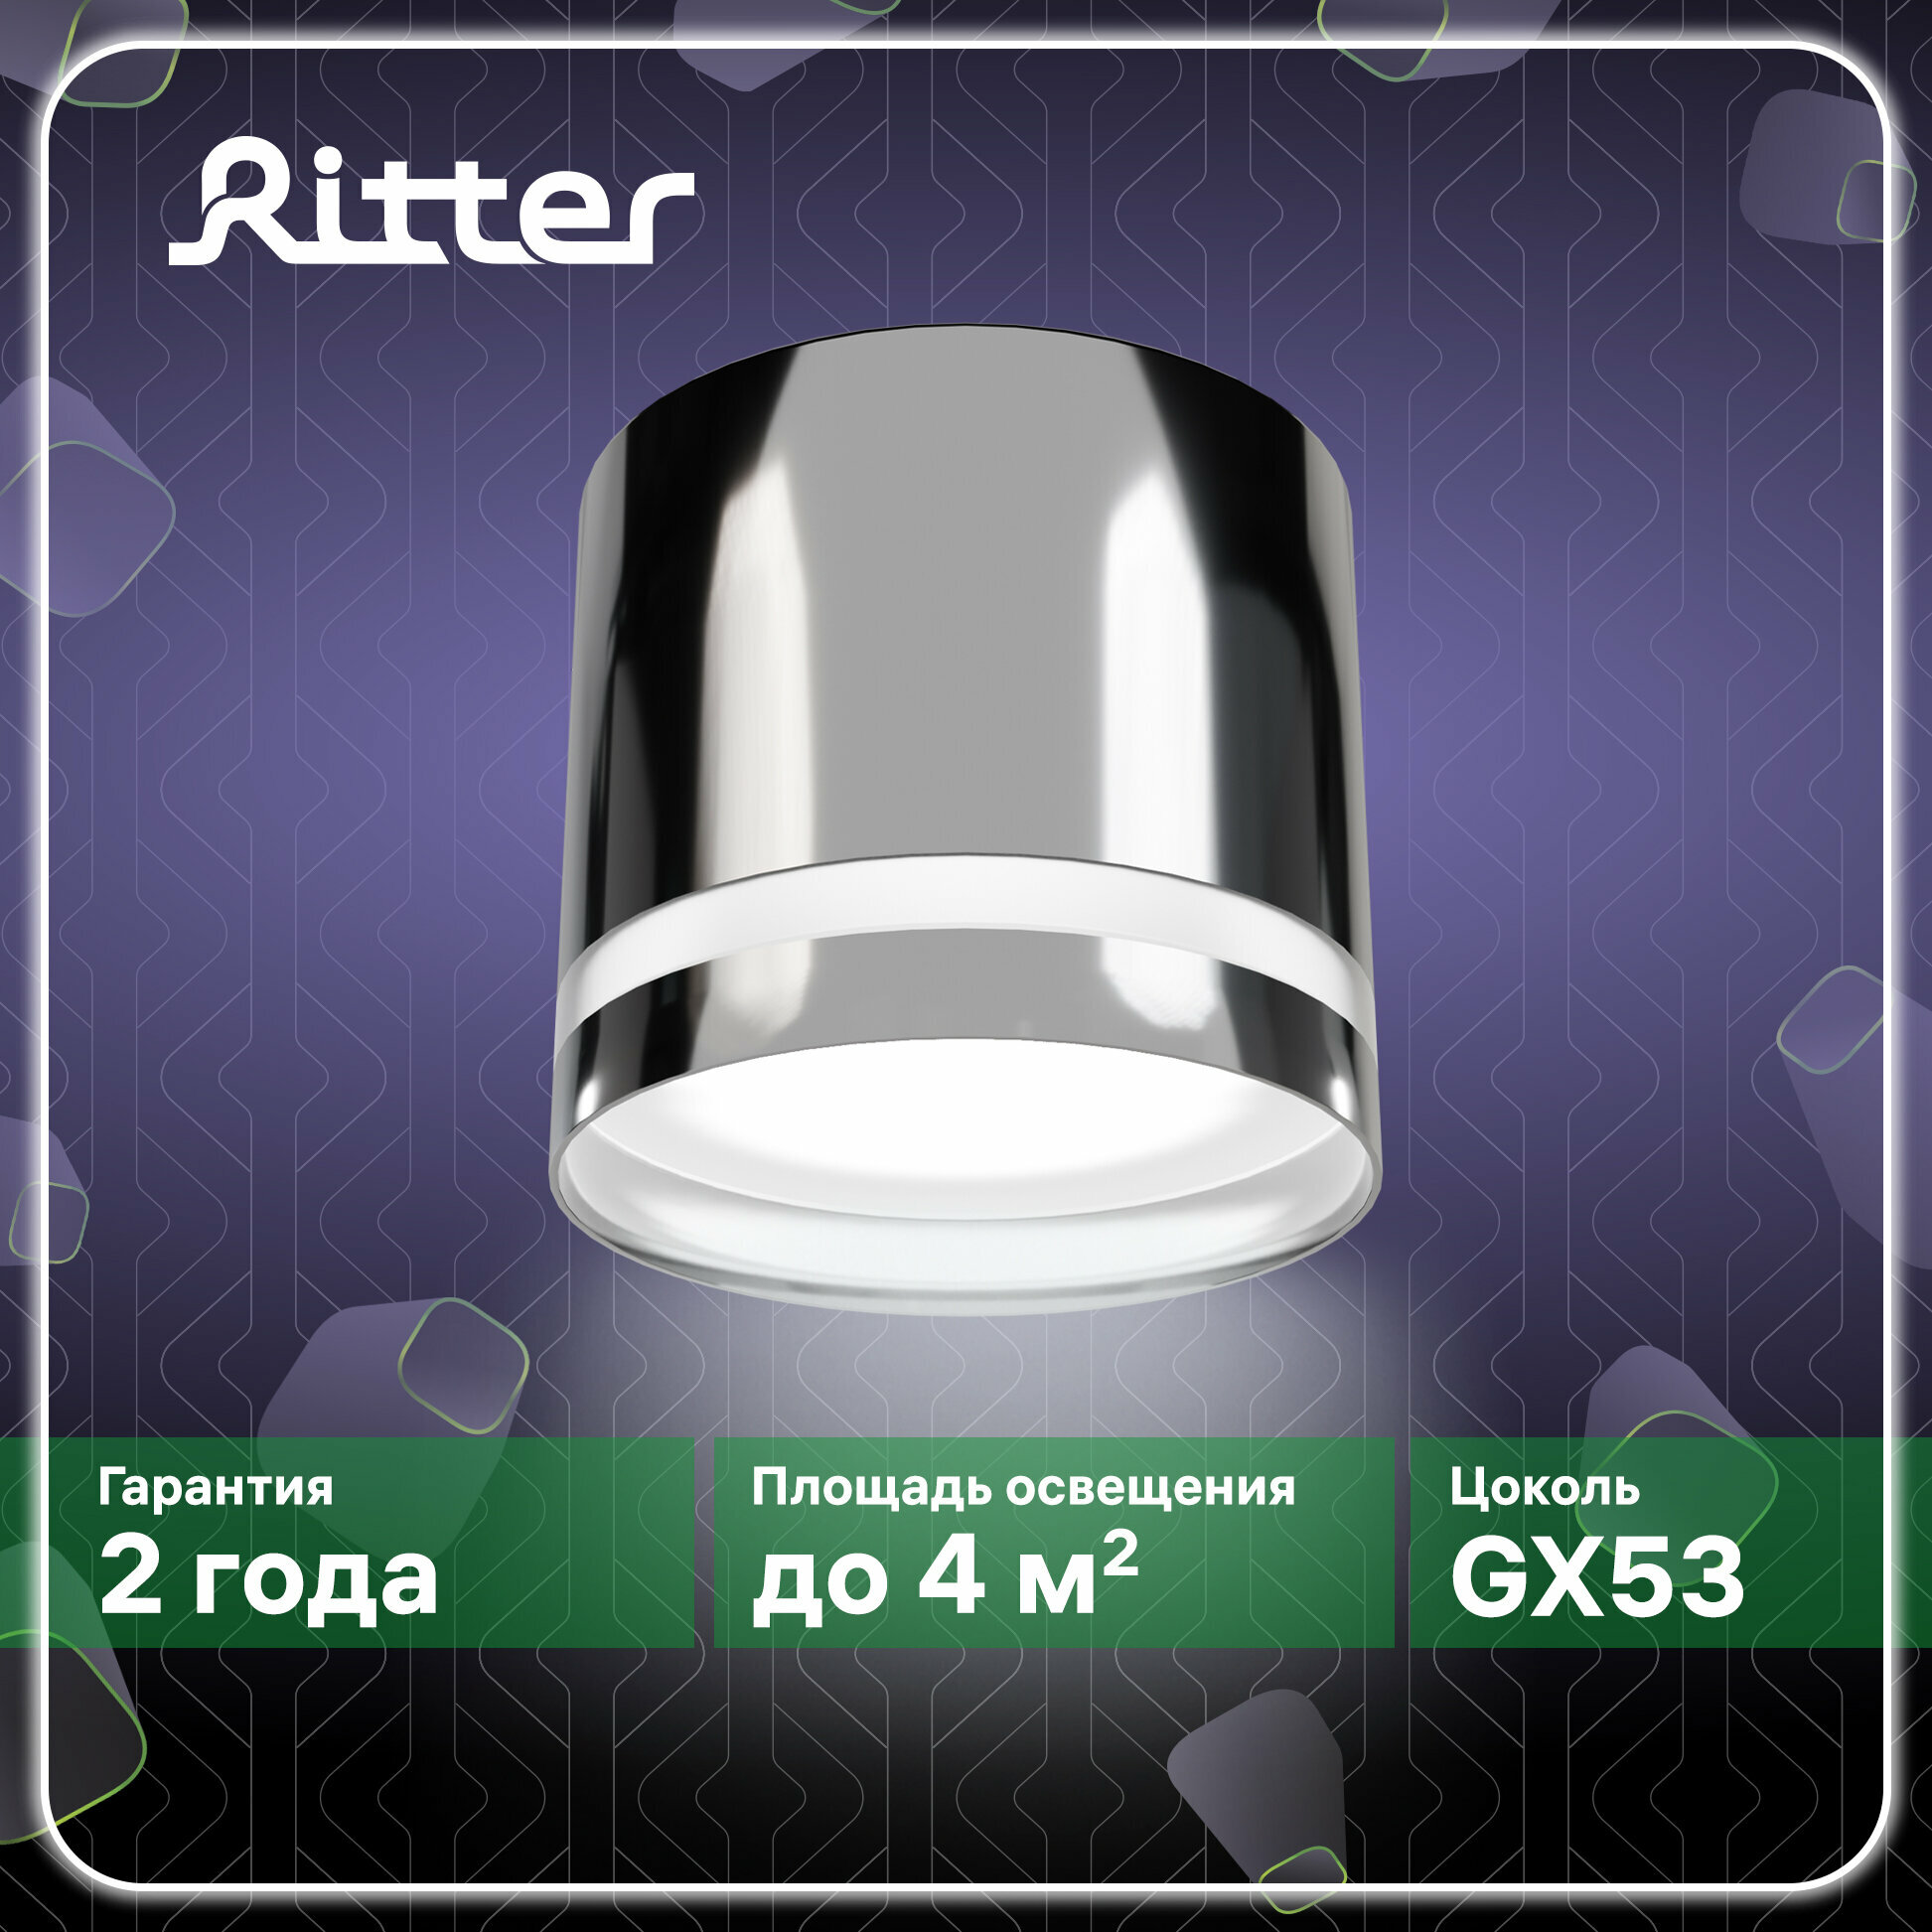 Светильник накладной Arton цилиндр 85х80мм GX53 алюминий хром настенно-потолочный светильник для гостиной кухни спальни Ritter 59944 9